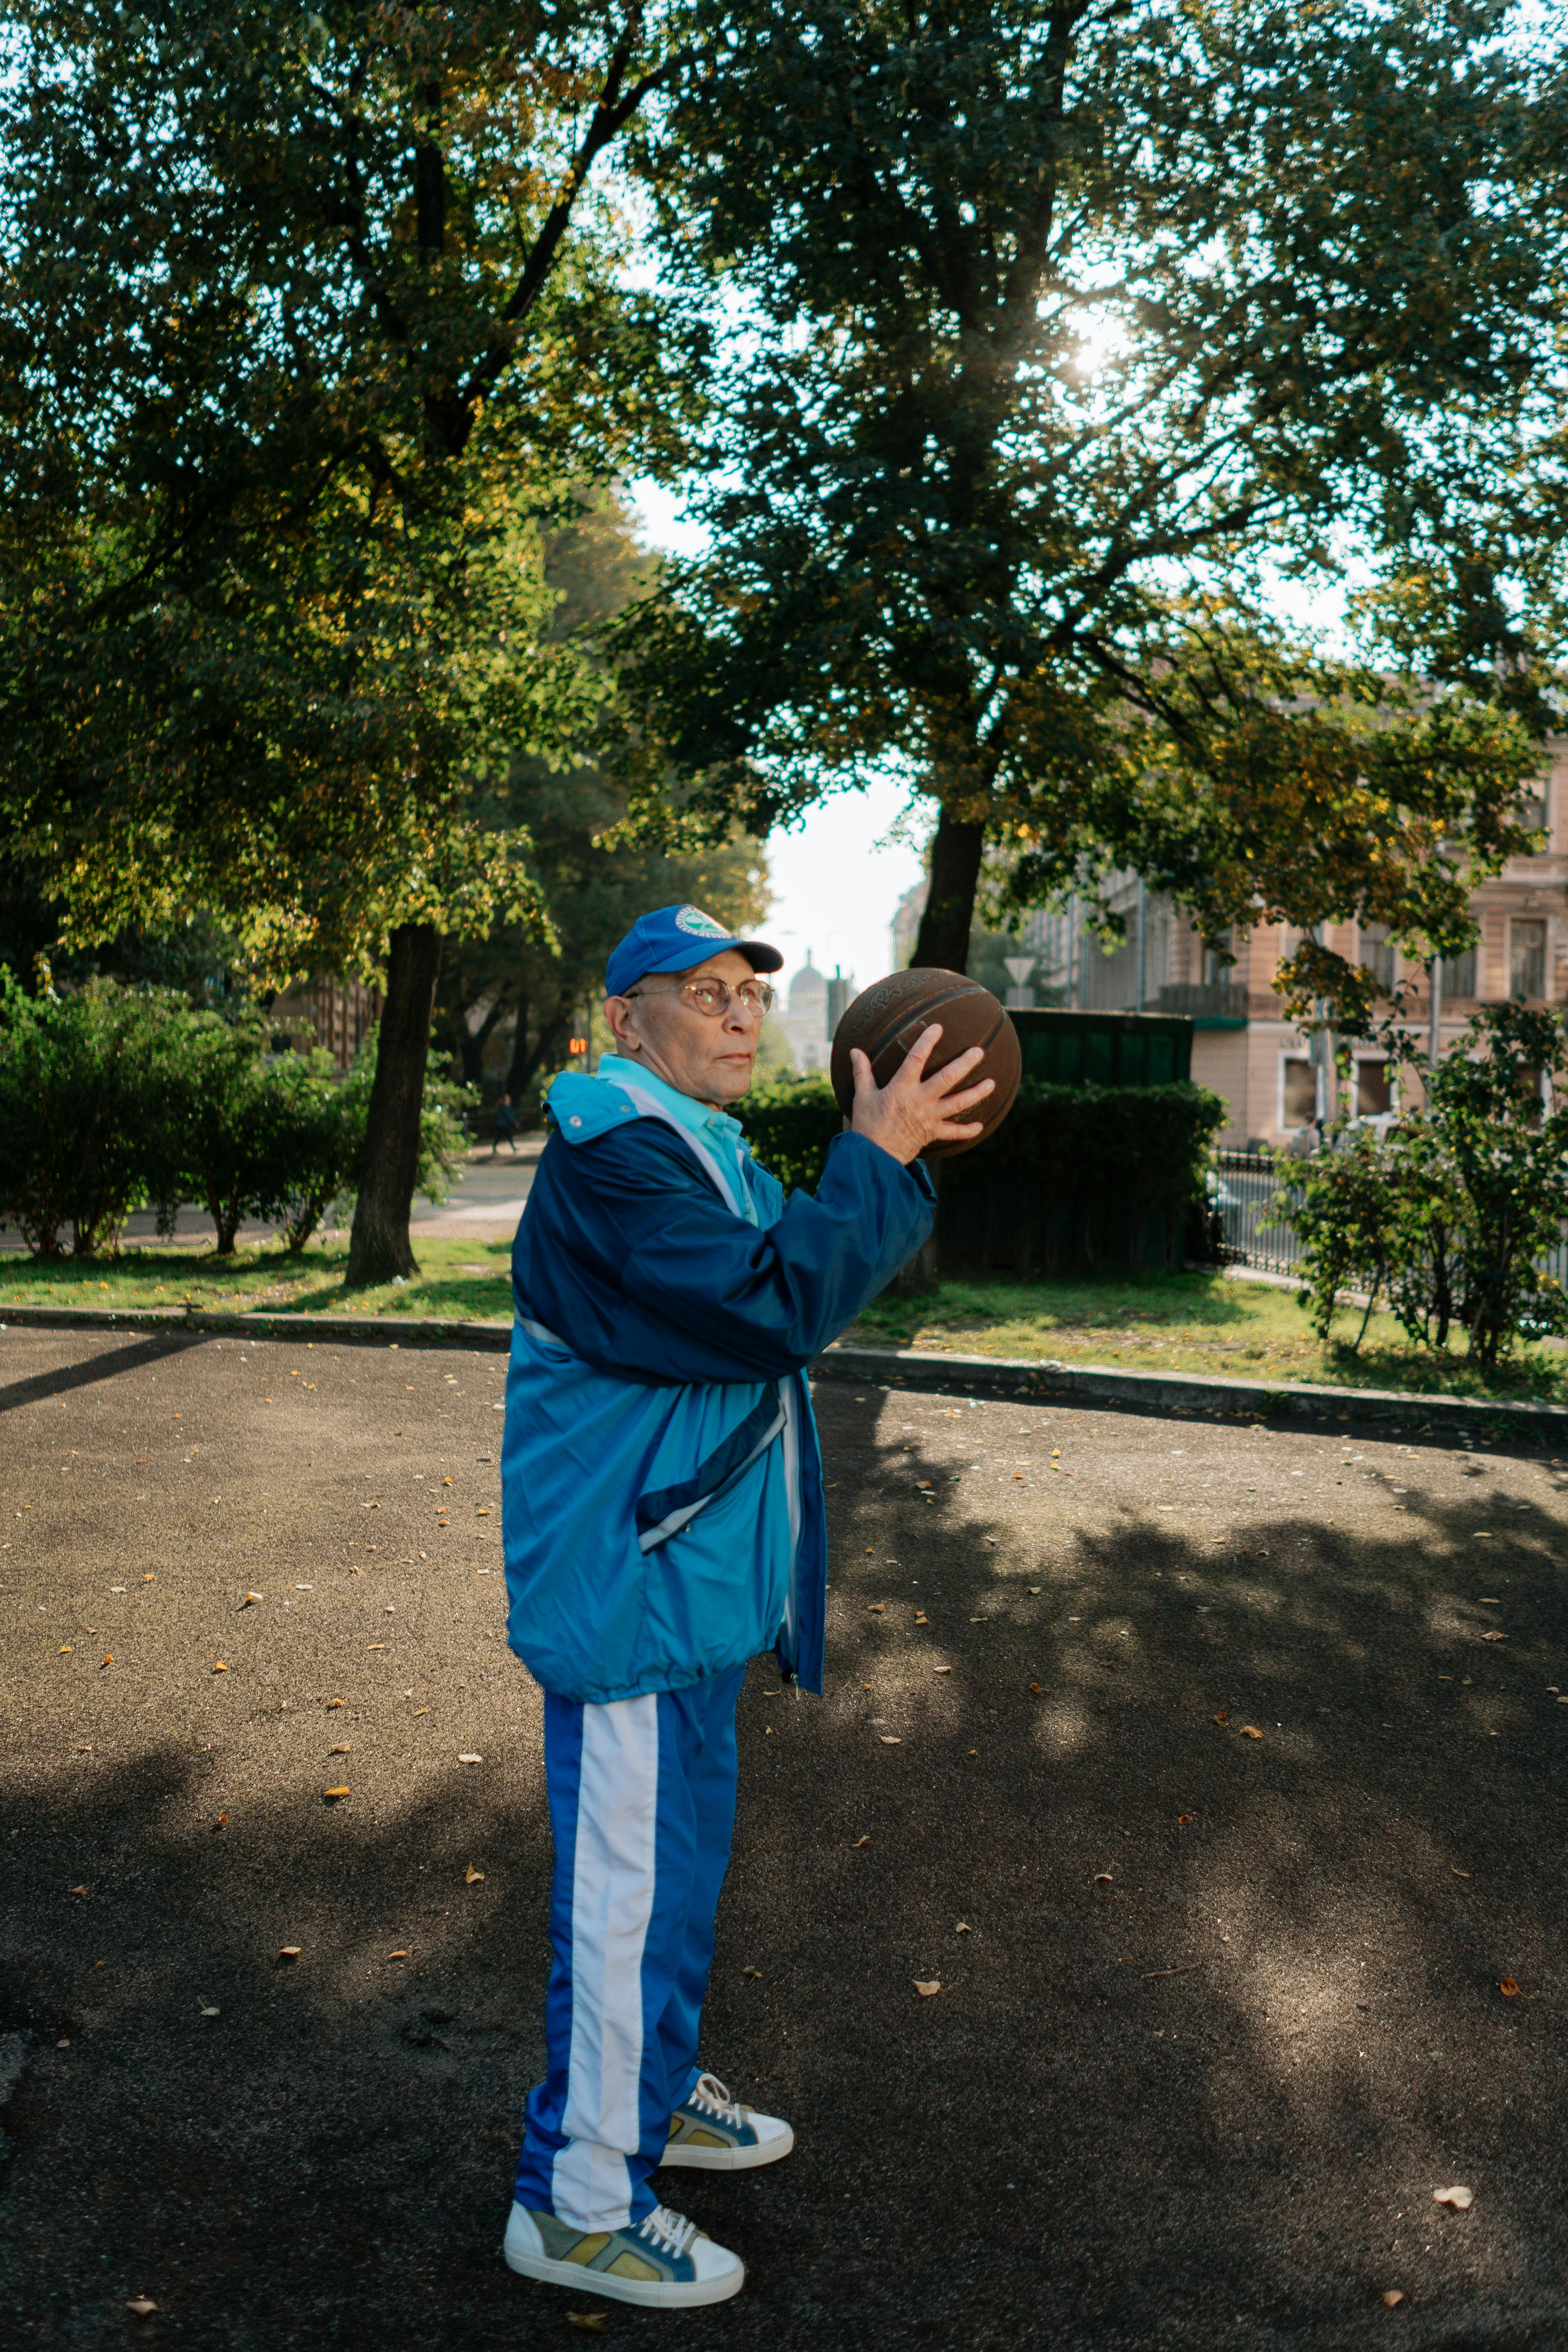 an elderly man holding a ball